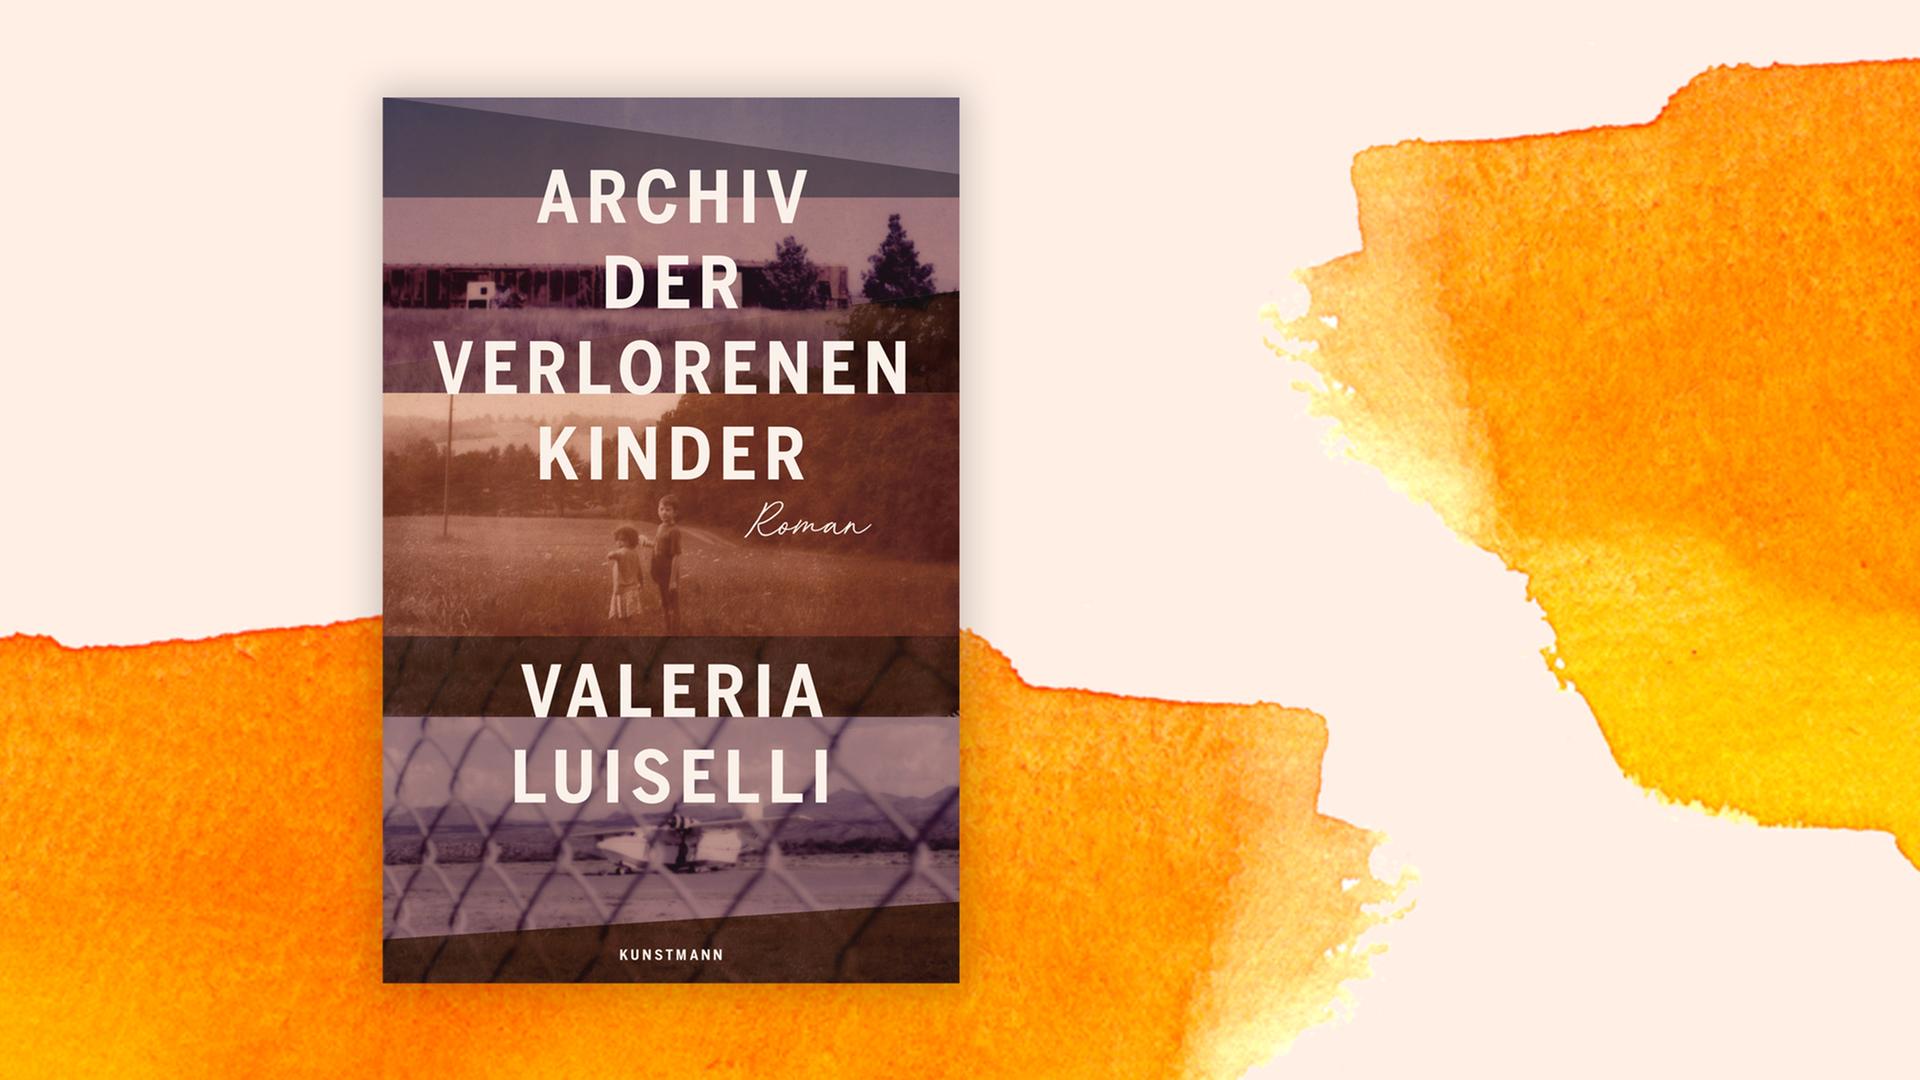 Buchcover zu Valeria Luisellis Roman "Archiv der verlorenen Kinder".